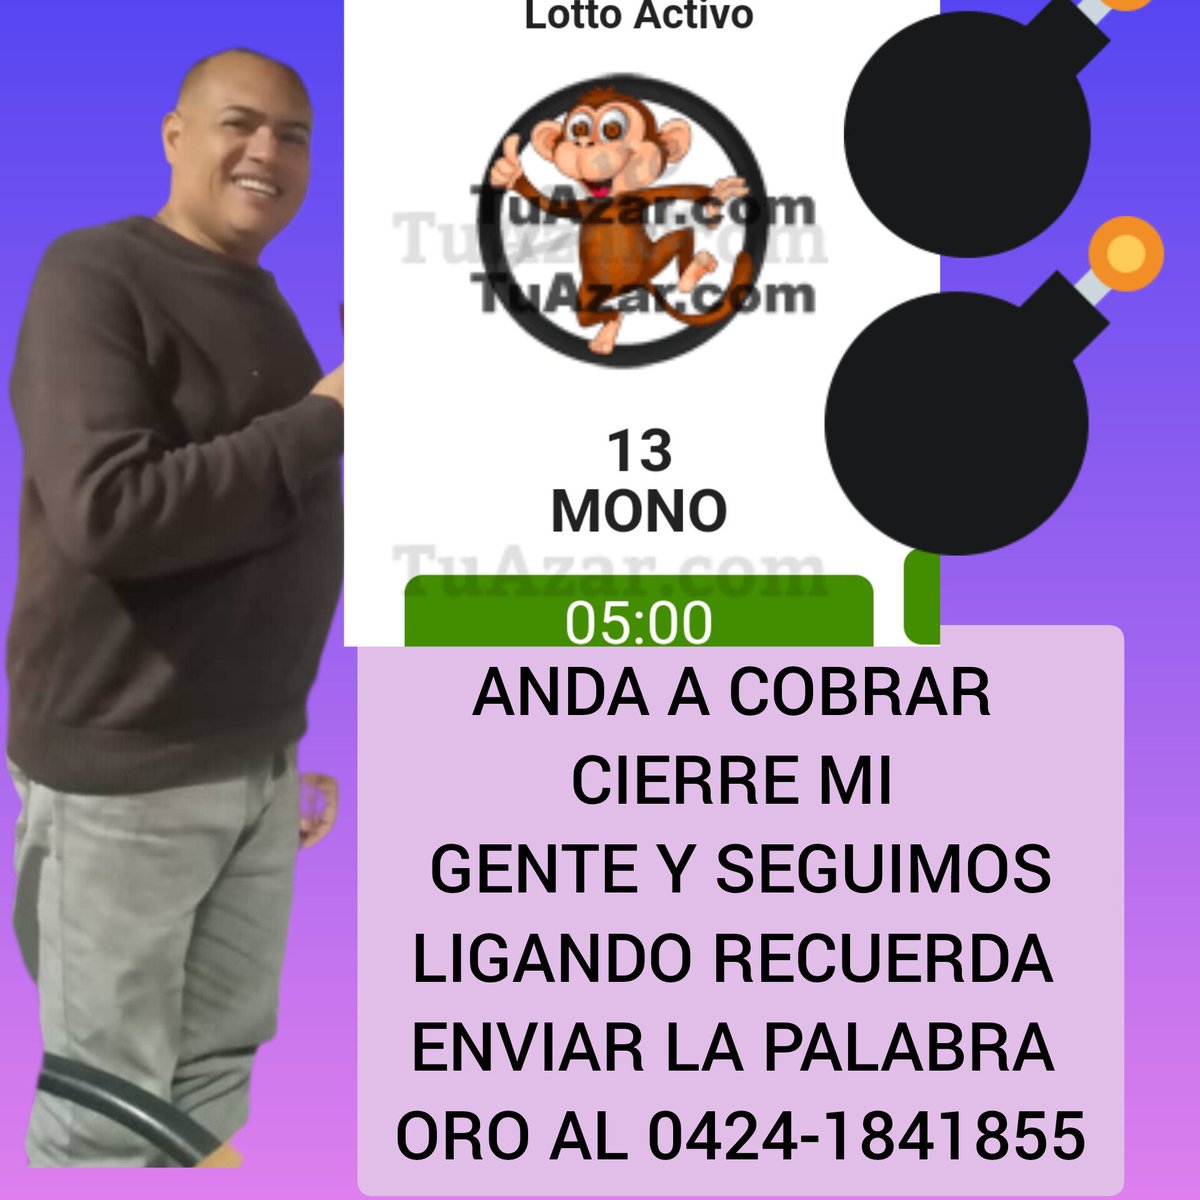 Seguimos ligando señores sabrosoooooo Envía la oaoamara ORO al 0424-1841855por Whatsapp para recibir información y jugar en la mañana invierte para que ganes animalitos y loterías ponle ponle ponle...

#hoy #caracas #lagranjitaofc #lottoactivo #mlb #nba #venezuela #hipismo